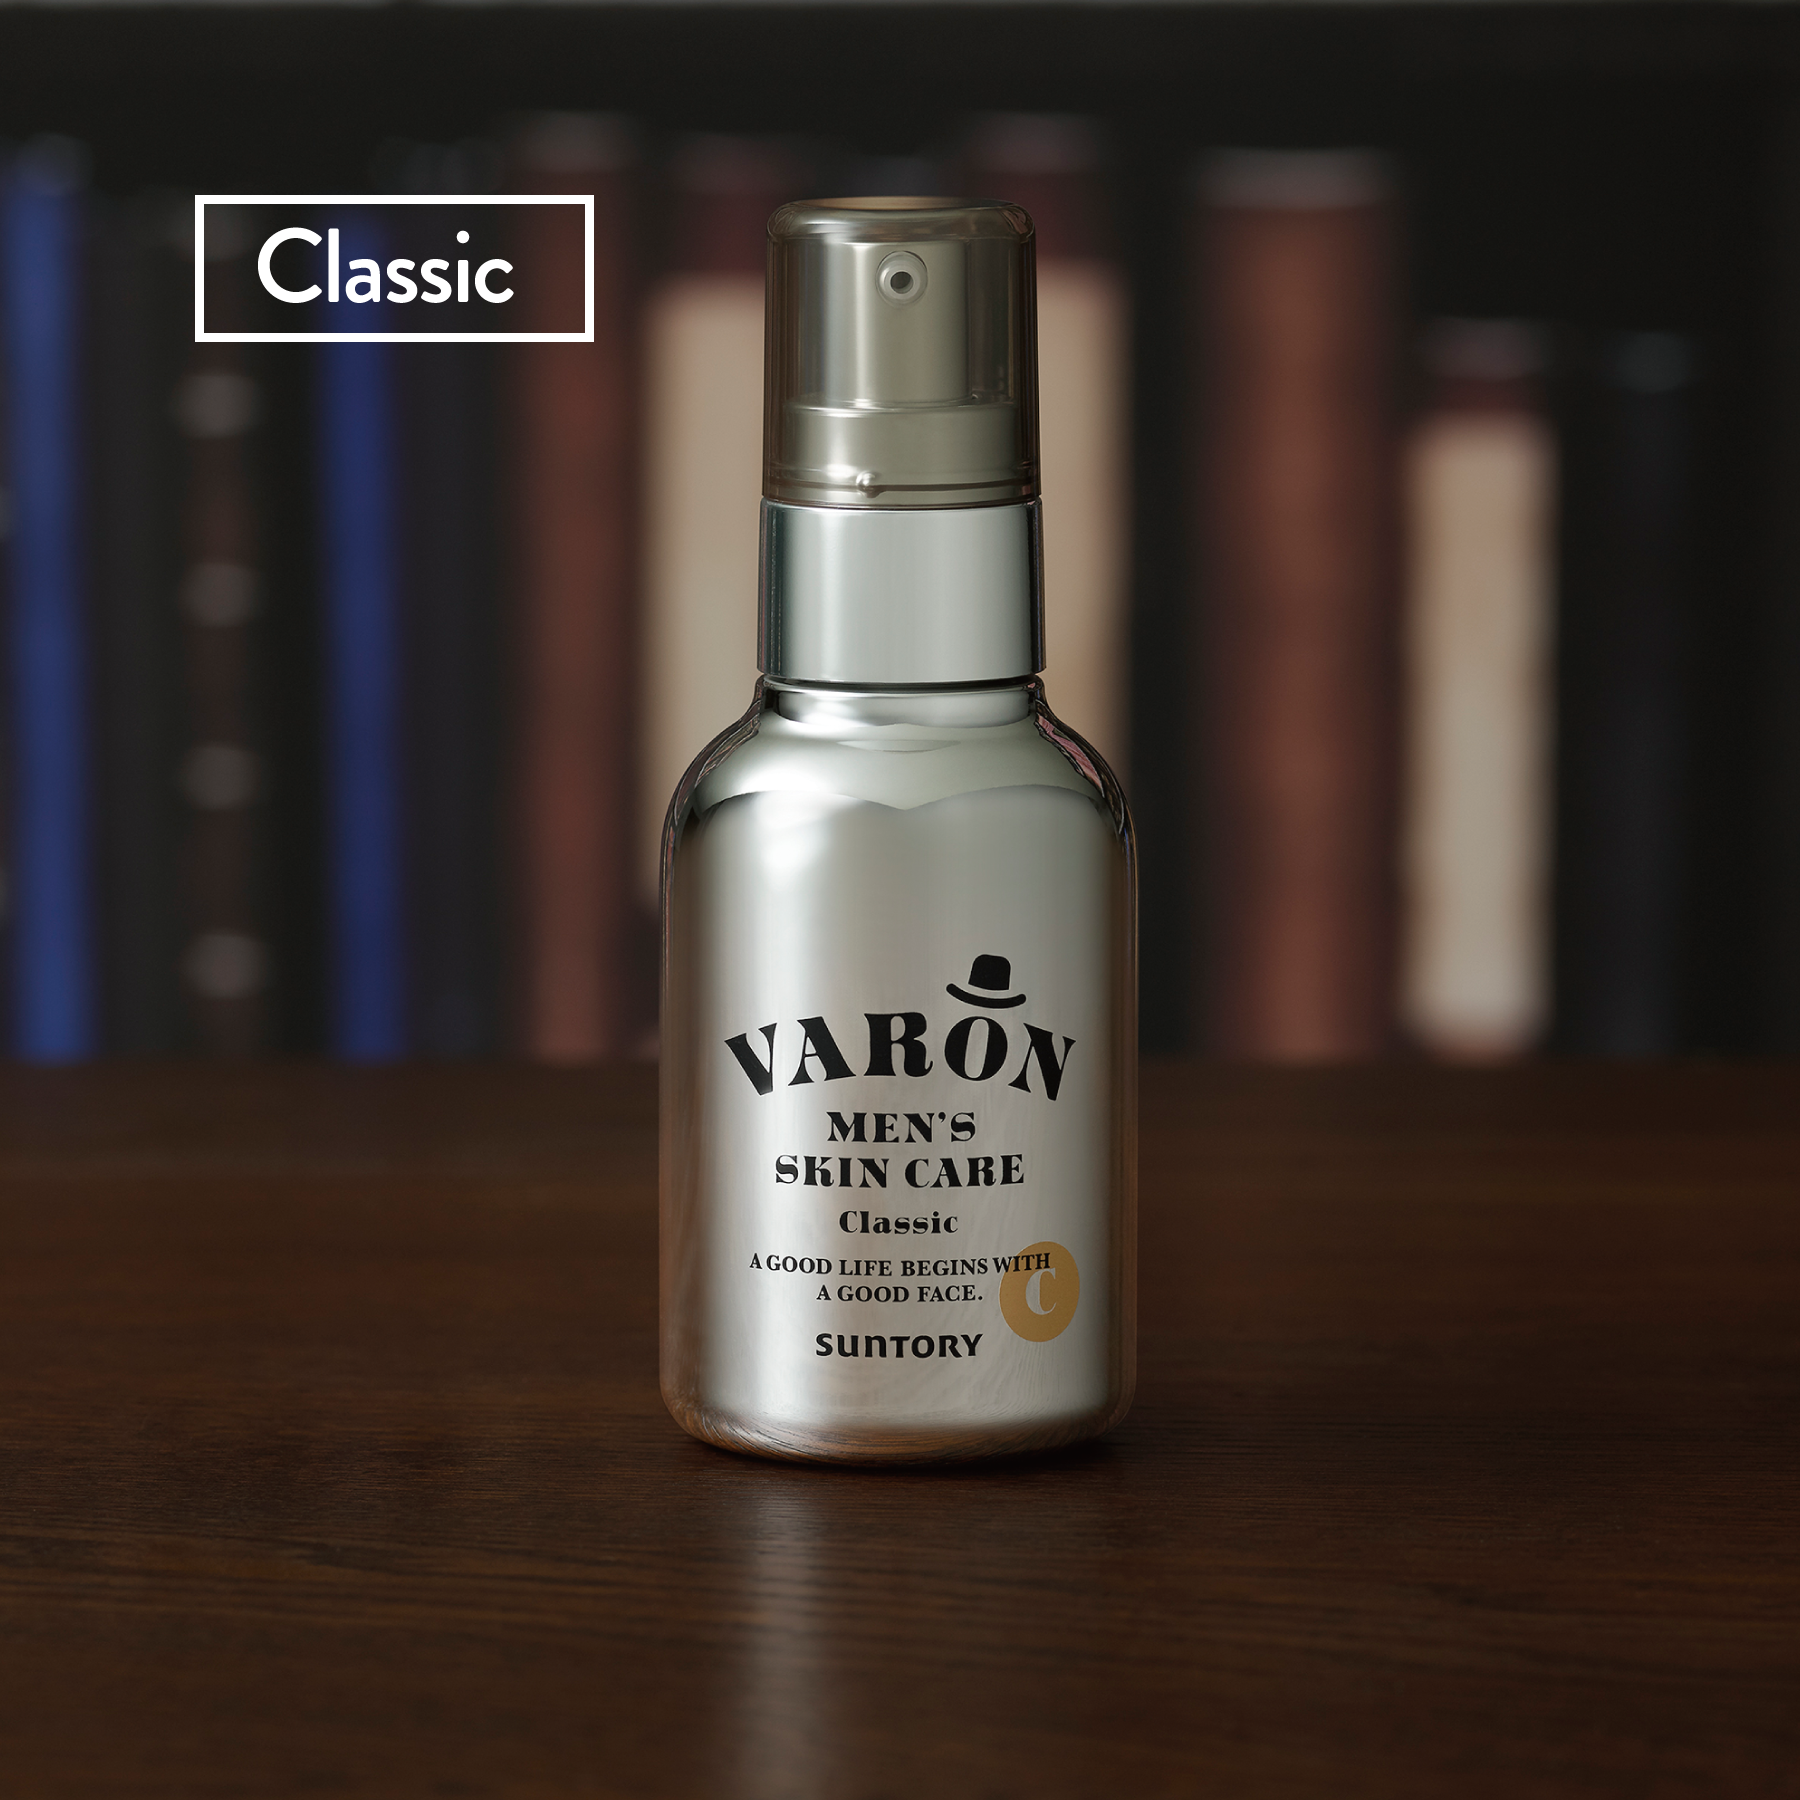 VARON (Classic) - A 3-in-1 men's skincare serum